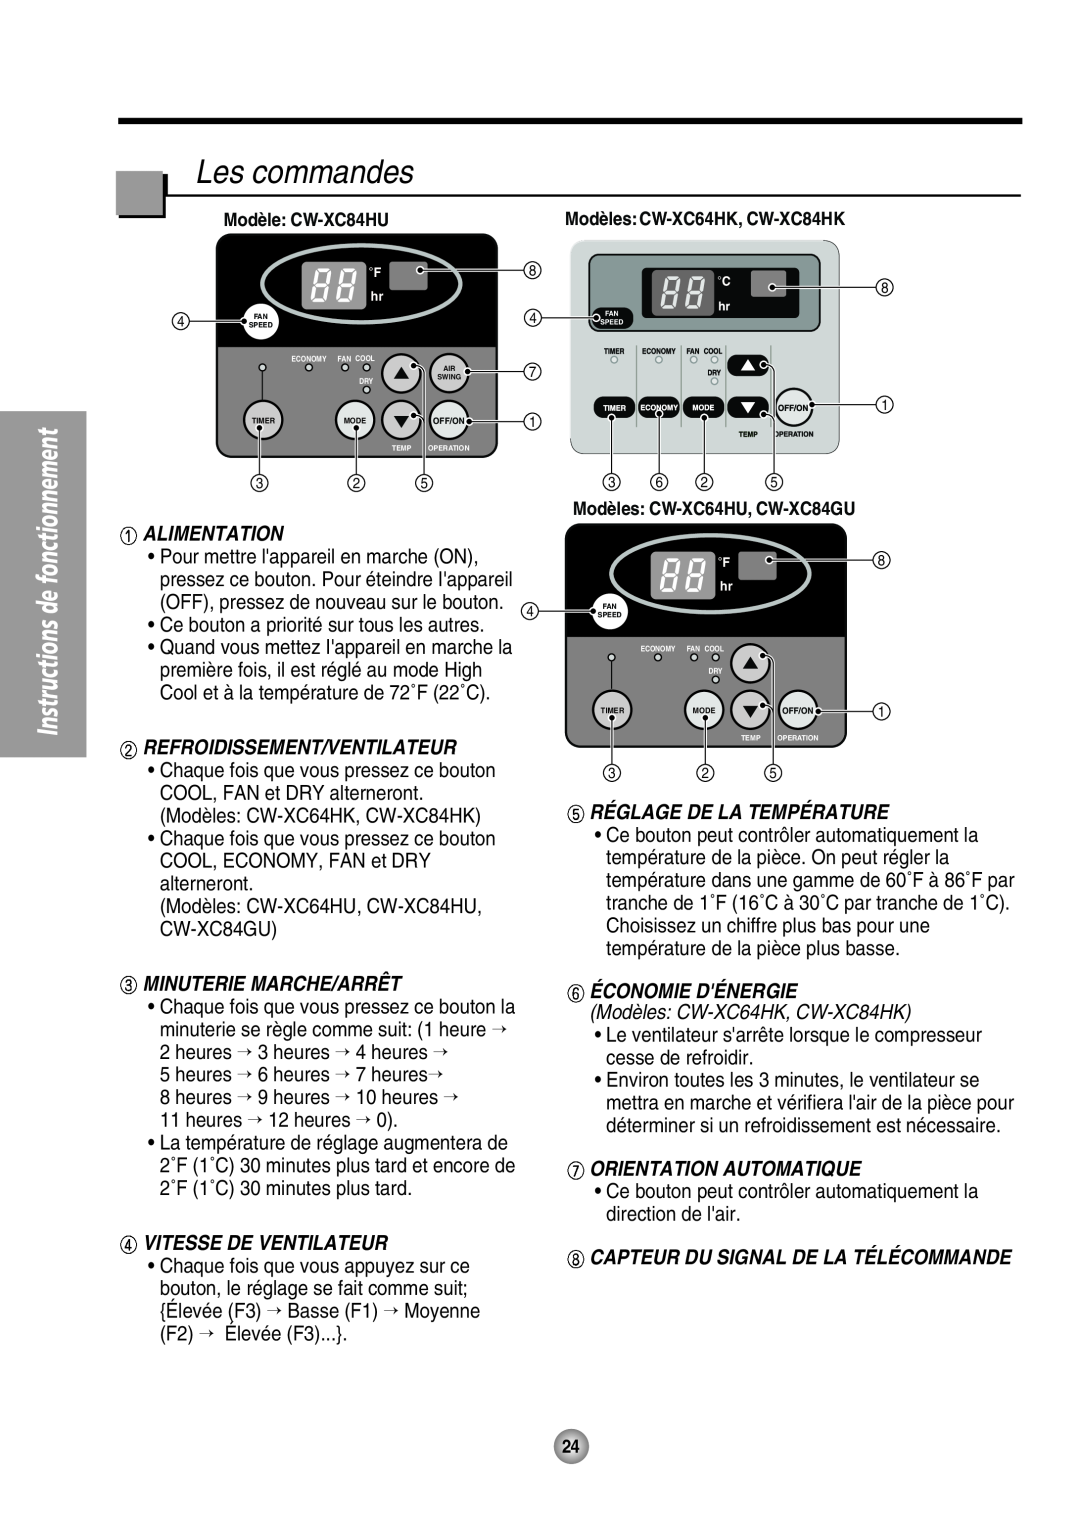 Panasonic CW-XC64HU manual Alimentation, Refroidissement/Ventilateur, Minuterie Marche/Arrêt, Réglage De La Température 